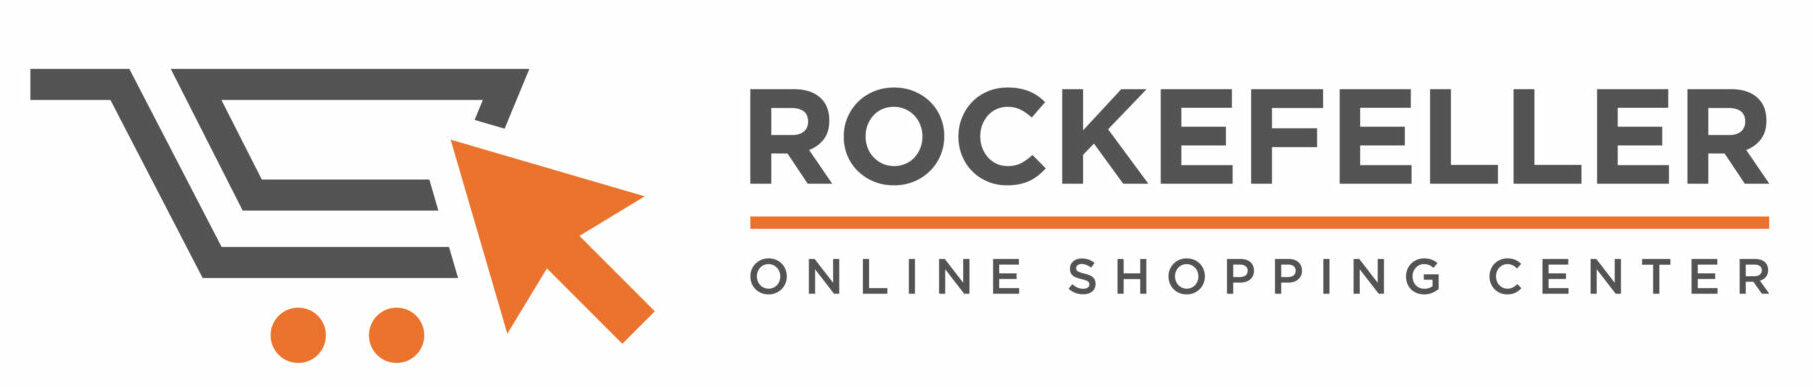 rockefeller-onlineshoppingcenter.com